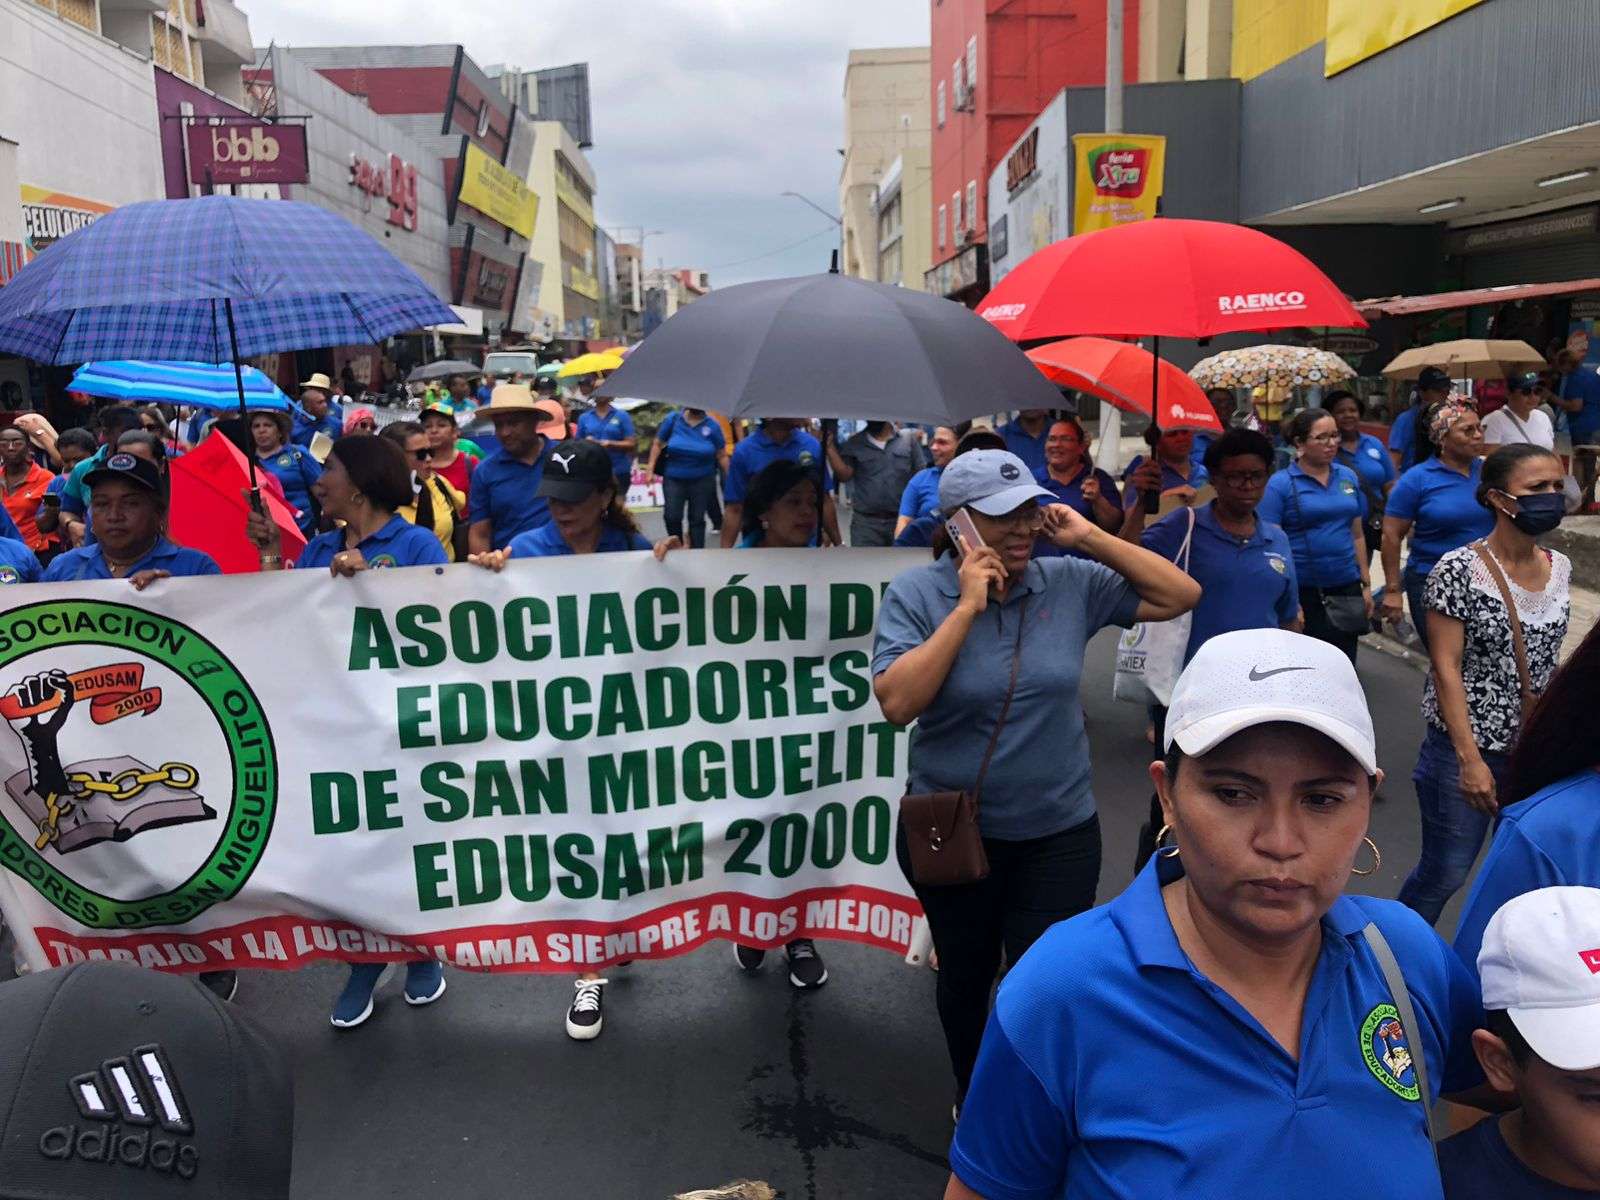 Los docentes marcharon por los alrededores de la escuela República de Venezuela, Calidonia.